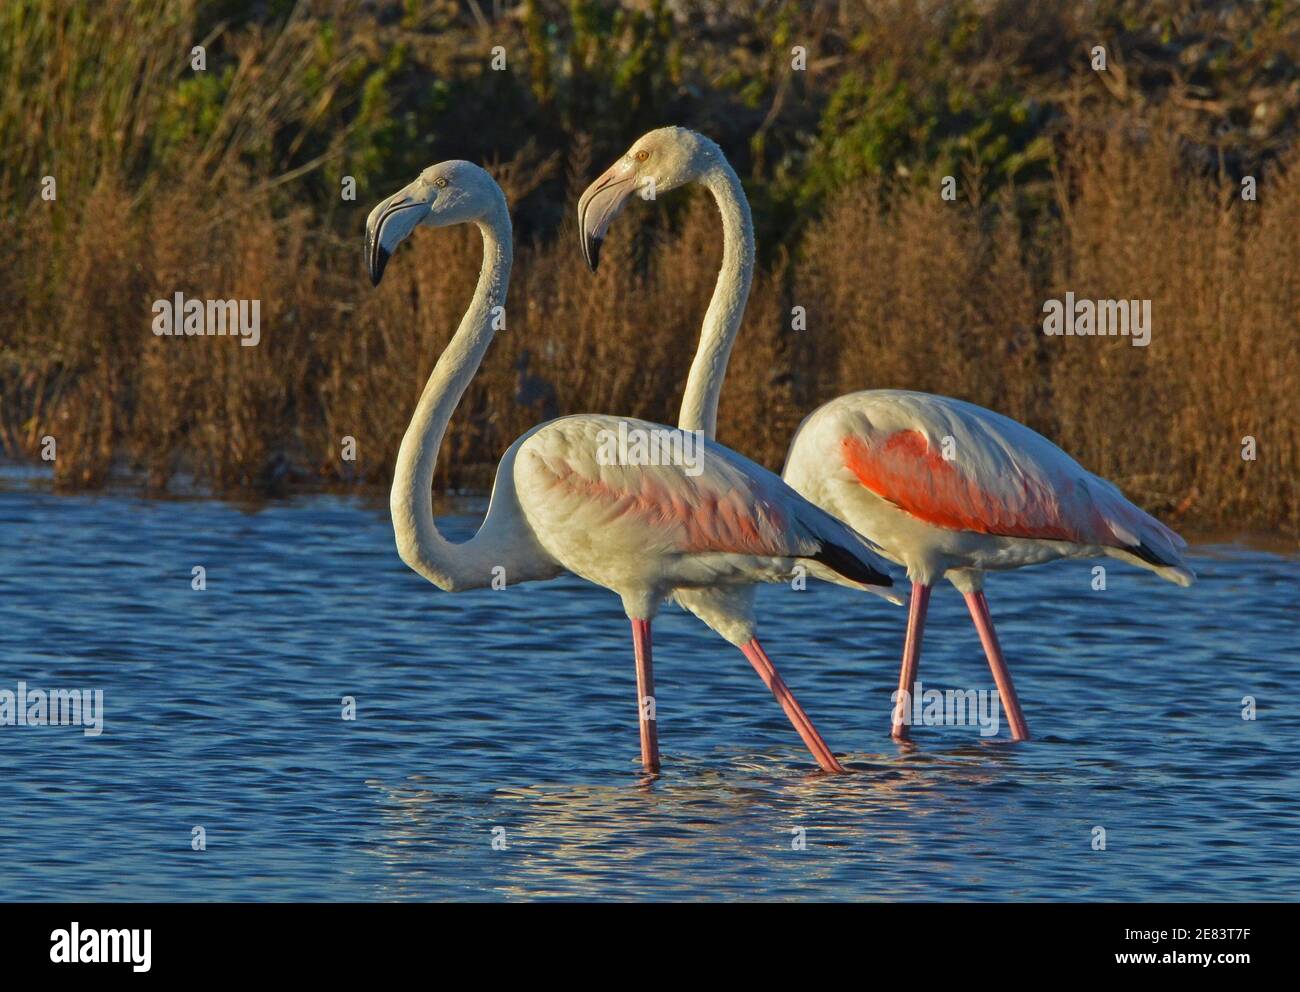 two pink flamingos walking in low water of lake Stock Photo